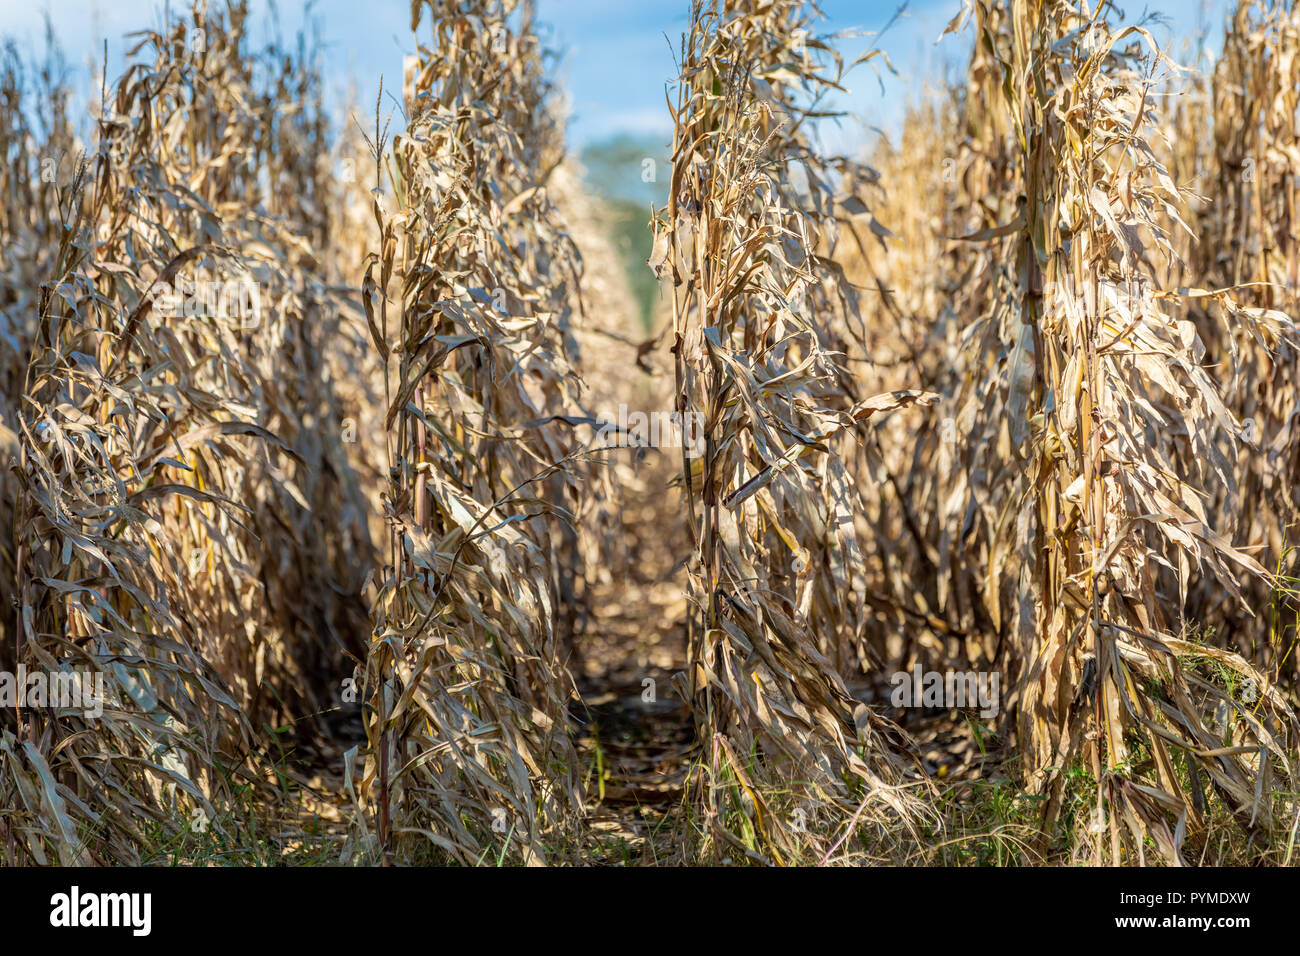 autumn corn stalks in a field Stock Photo